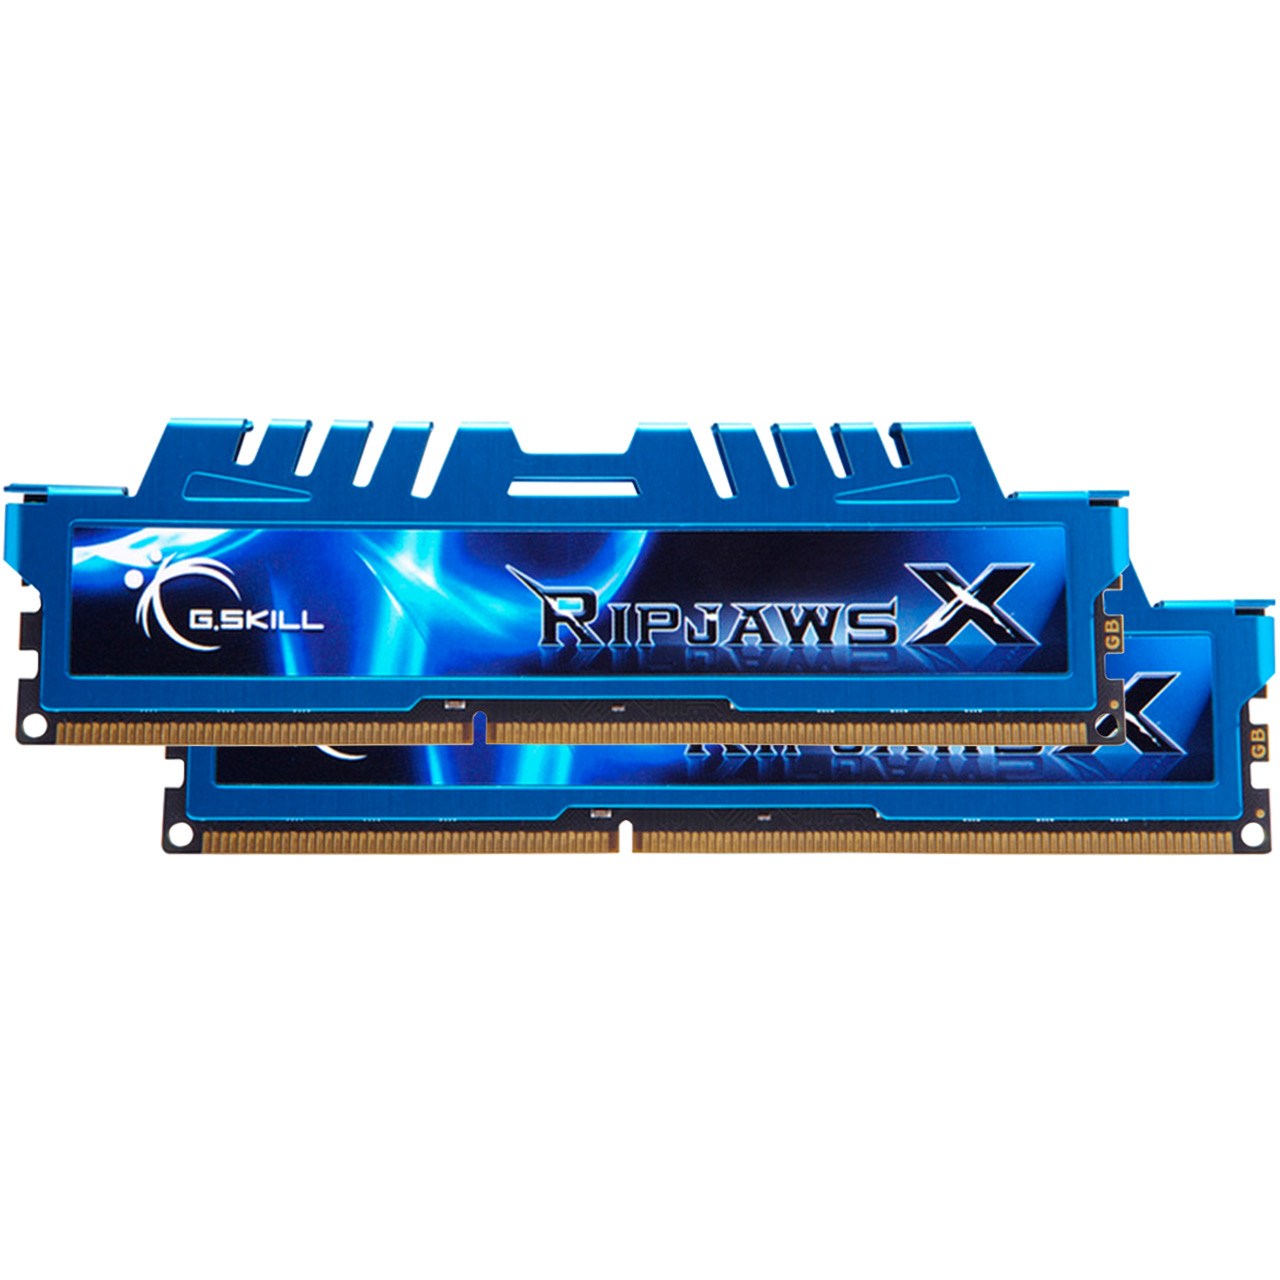 رم دسکتاپ DDR3 دو کاناله 1600 مگاهرتز CL7 جی اسکیل مدل Ripjaws X ظرفیت 8 گیگابایت